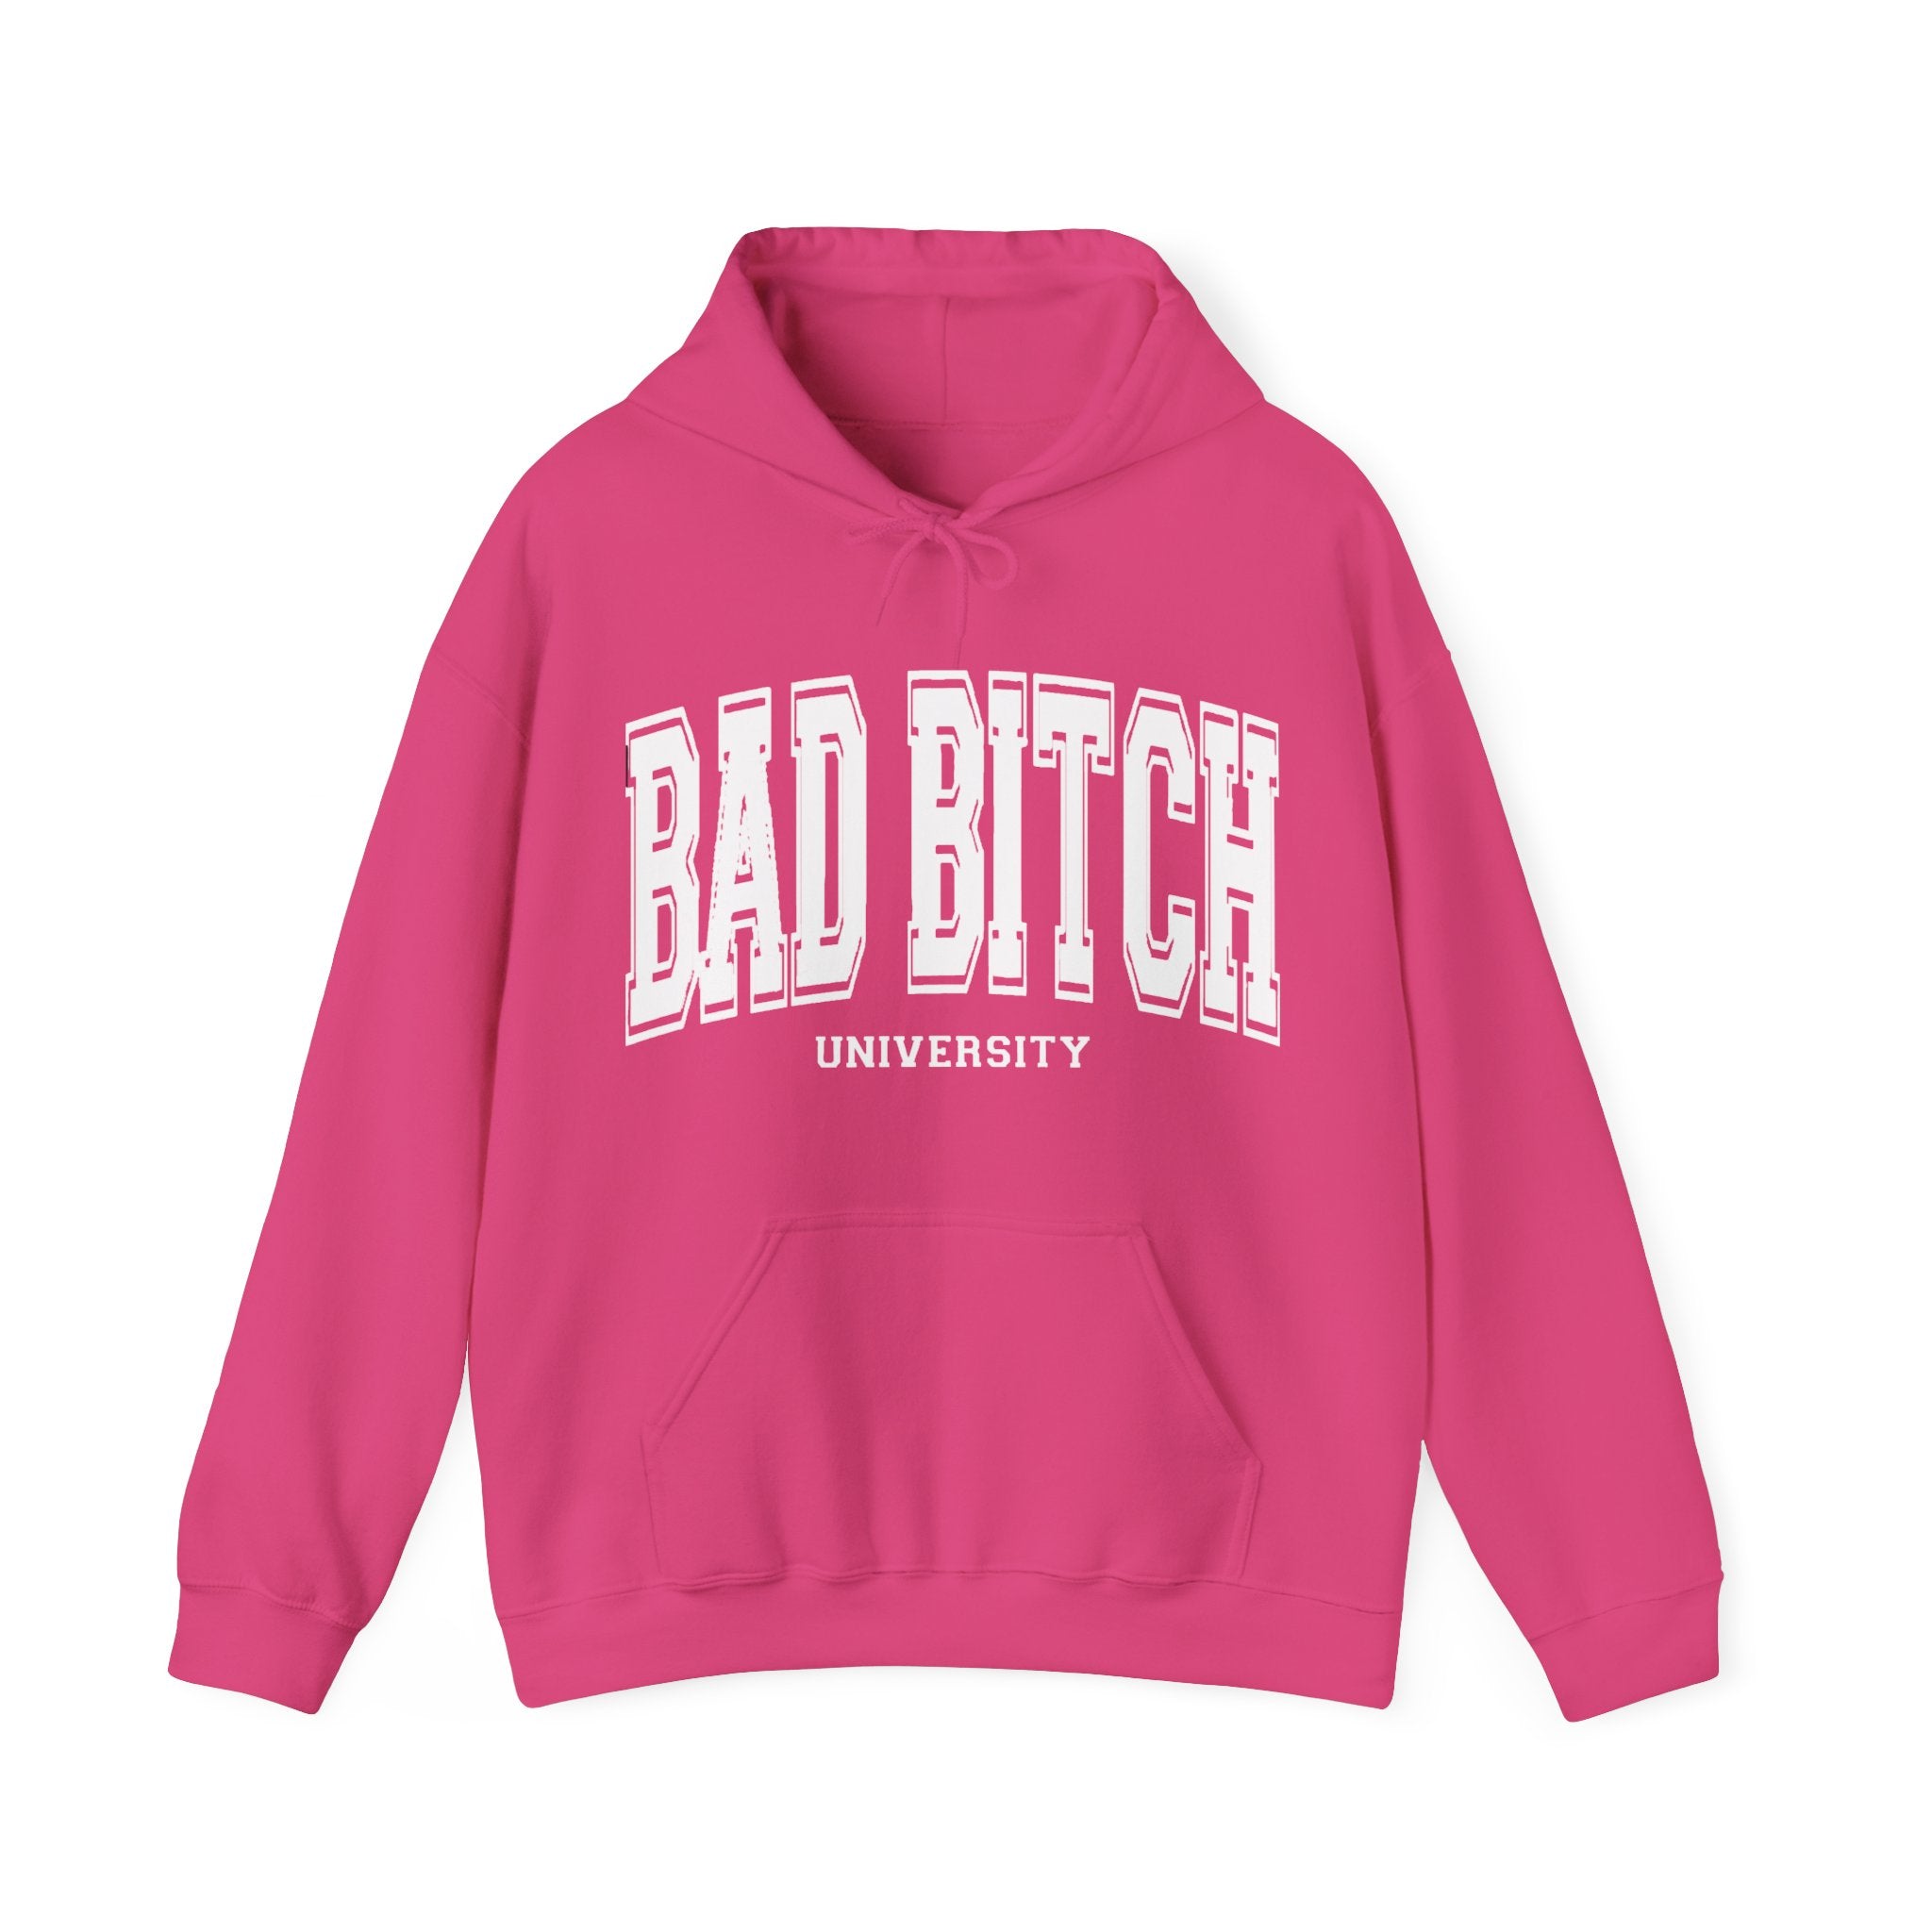 Bad Bitch University Hooded Sweatshirt